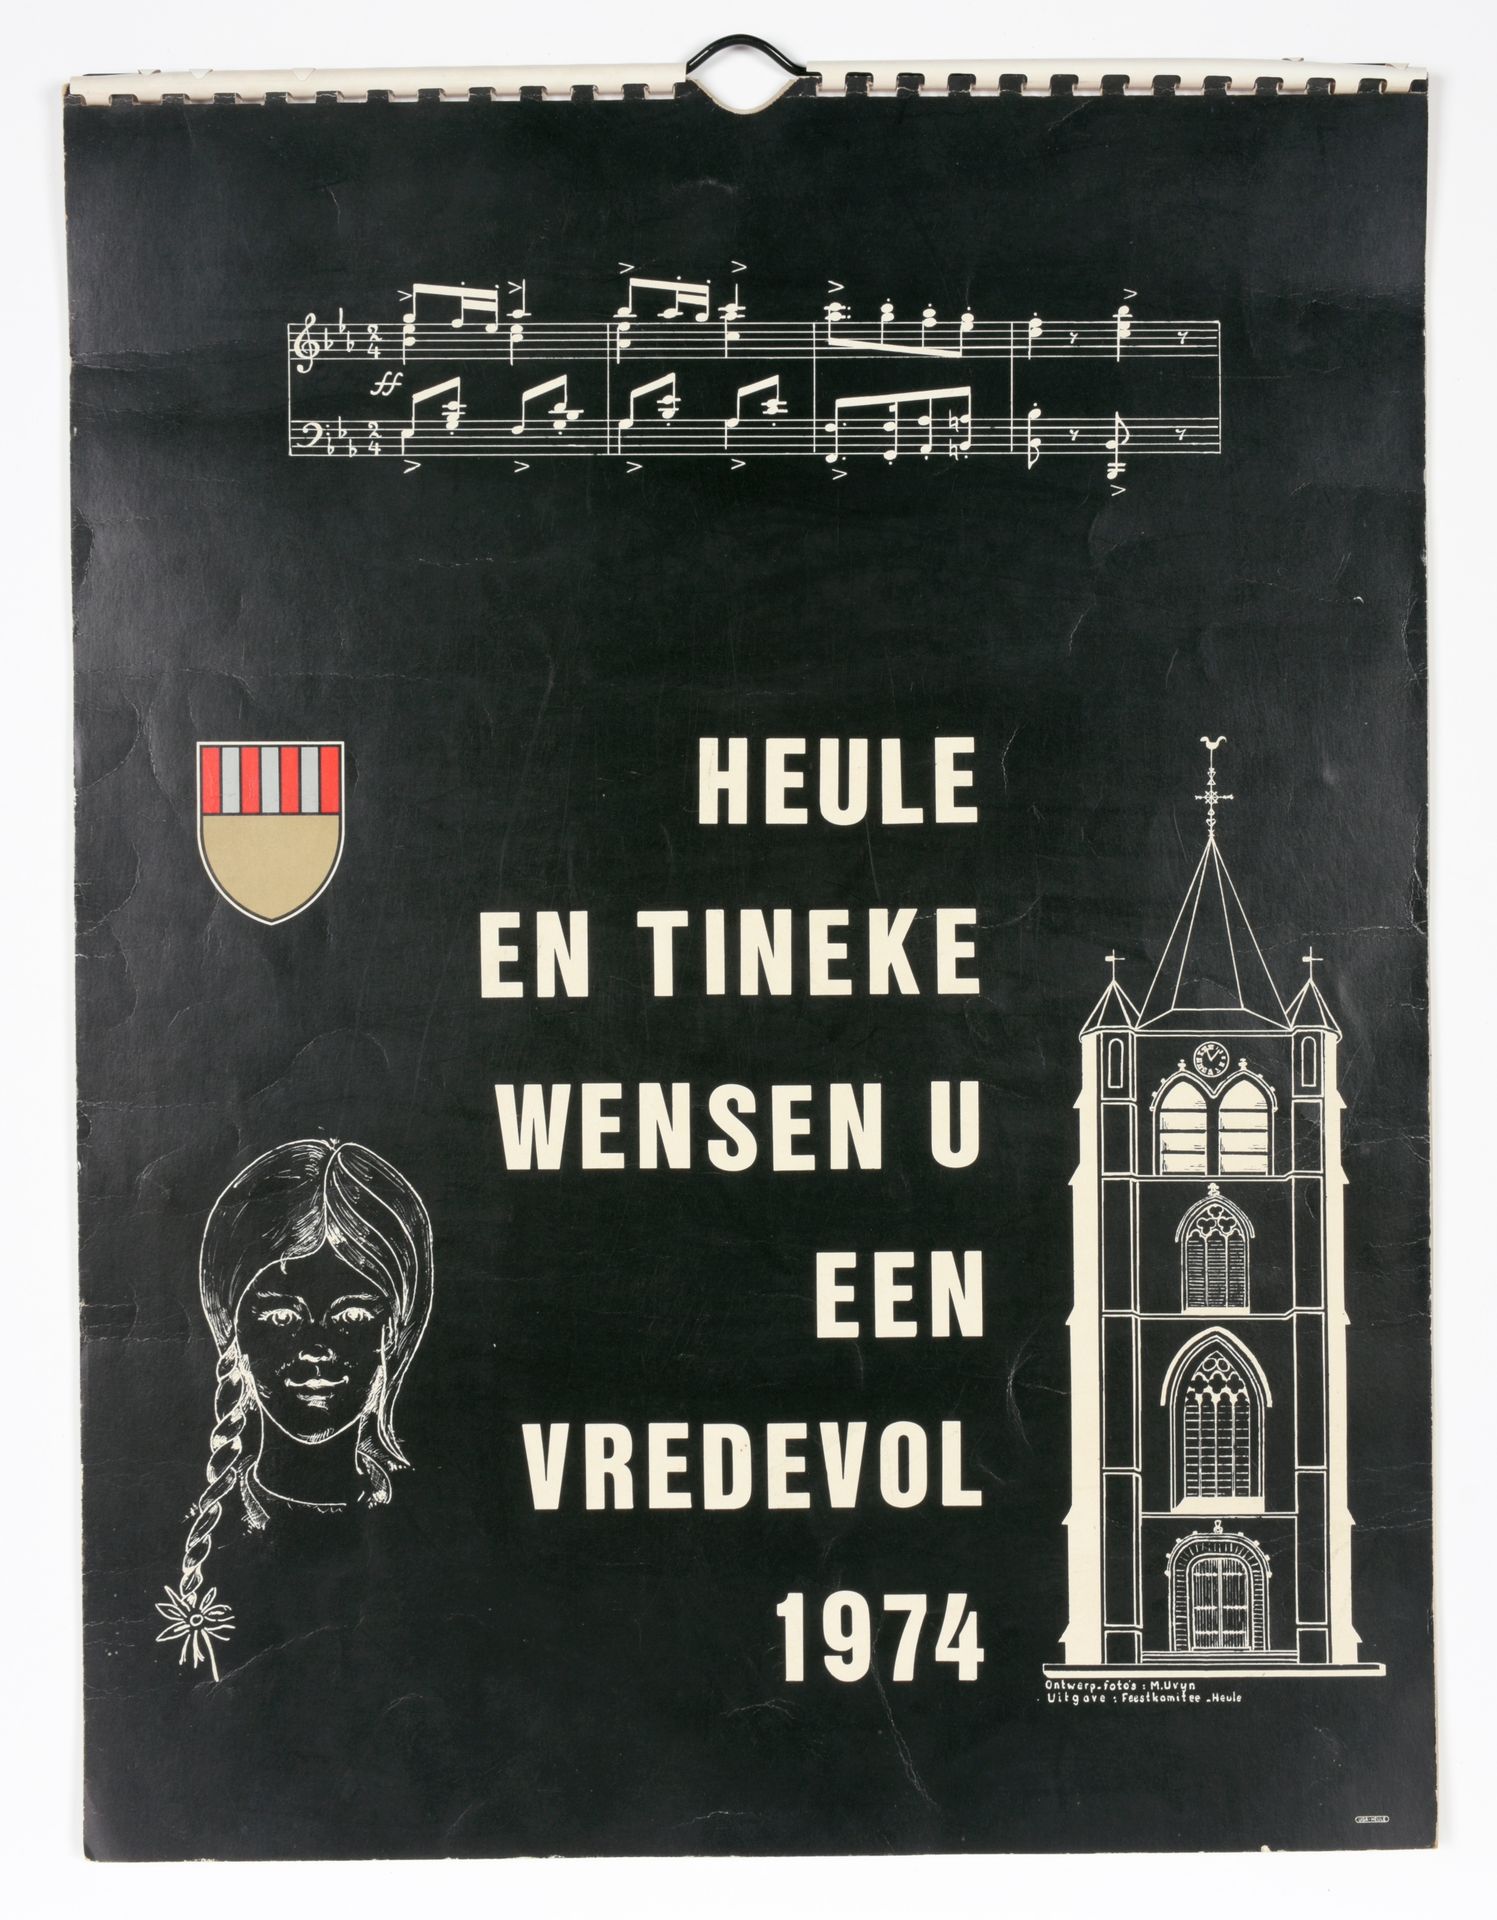 [HEULE] UVYN, Marcel Heule en Tineke wensen u een vredevol 1974
Feestkomitee Heu&hellip;